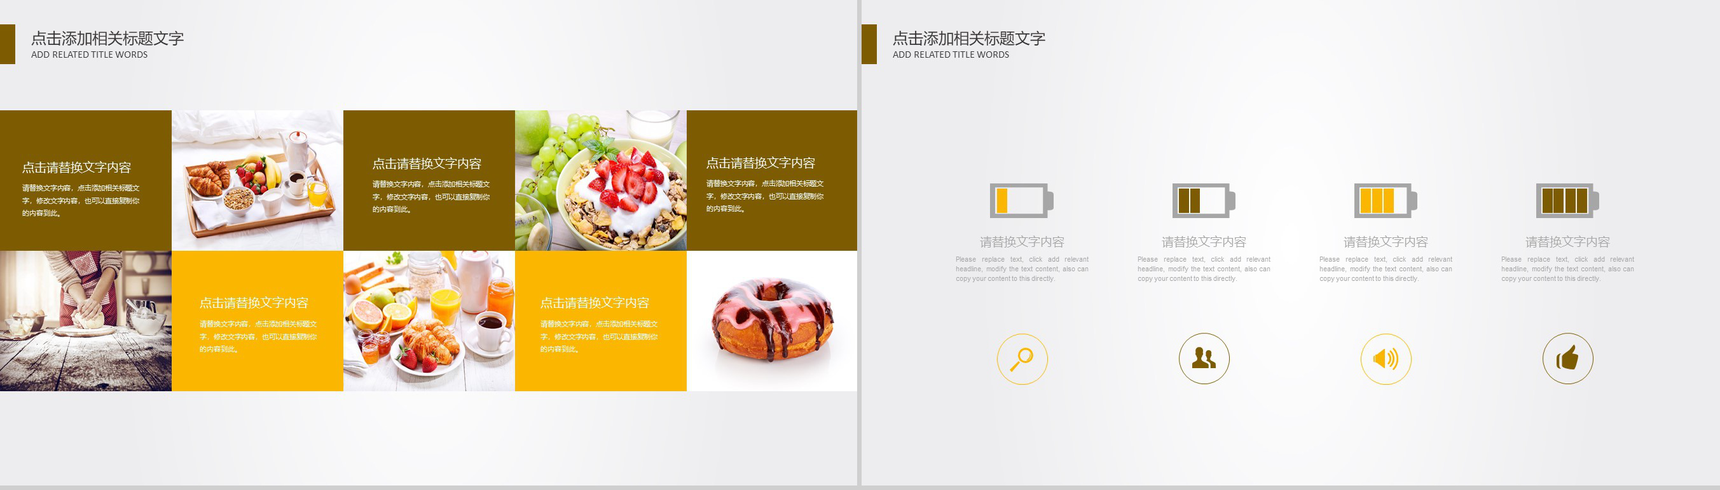 蛋糕店产品宣传美食文化推广PPT模板-3